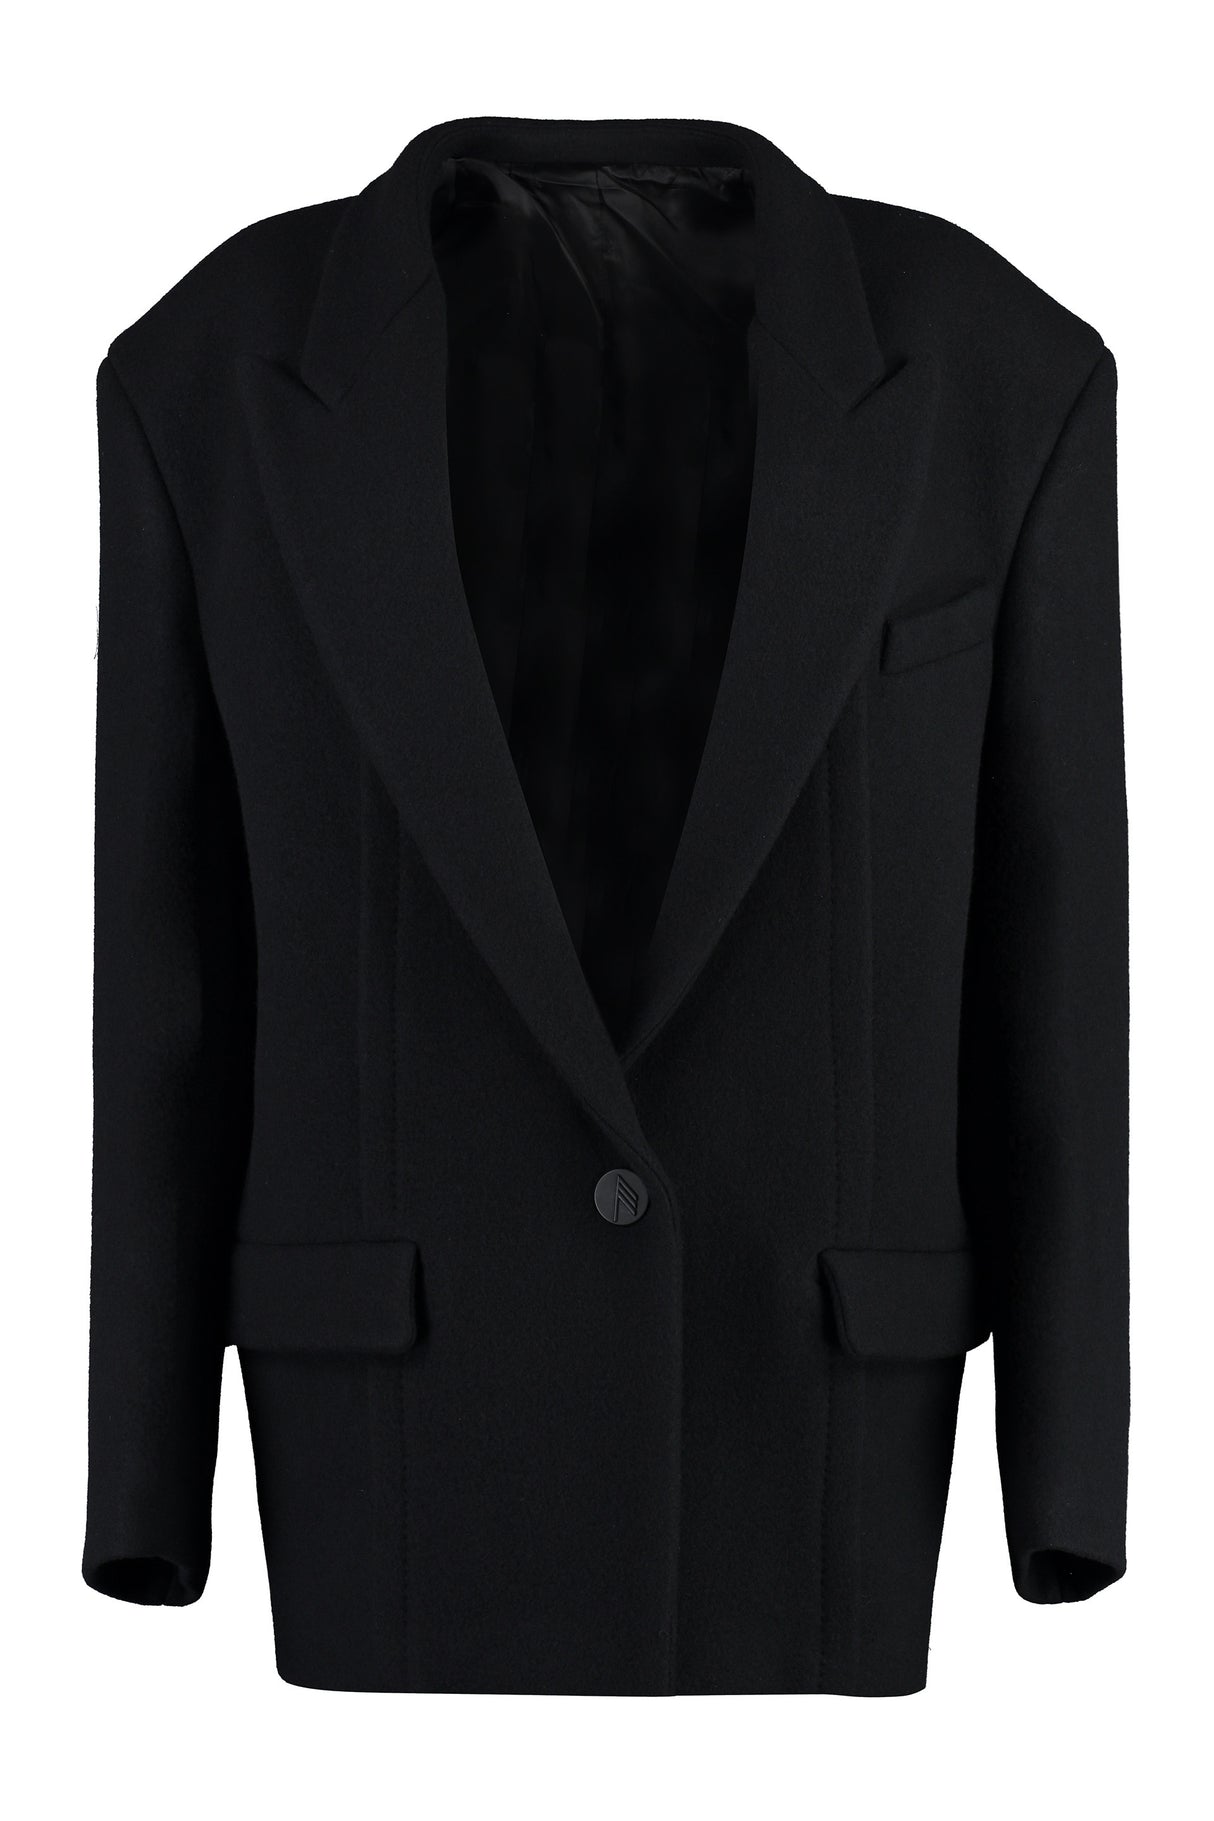 Áo khoác len đen cho phụ nữ - Kiểu dáng rộng cùng vai dày và cổ áo lapel